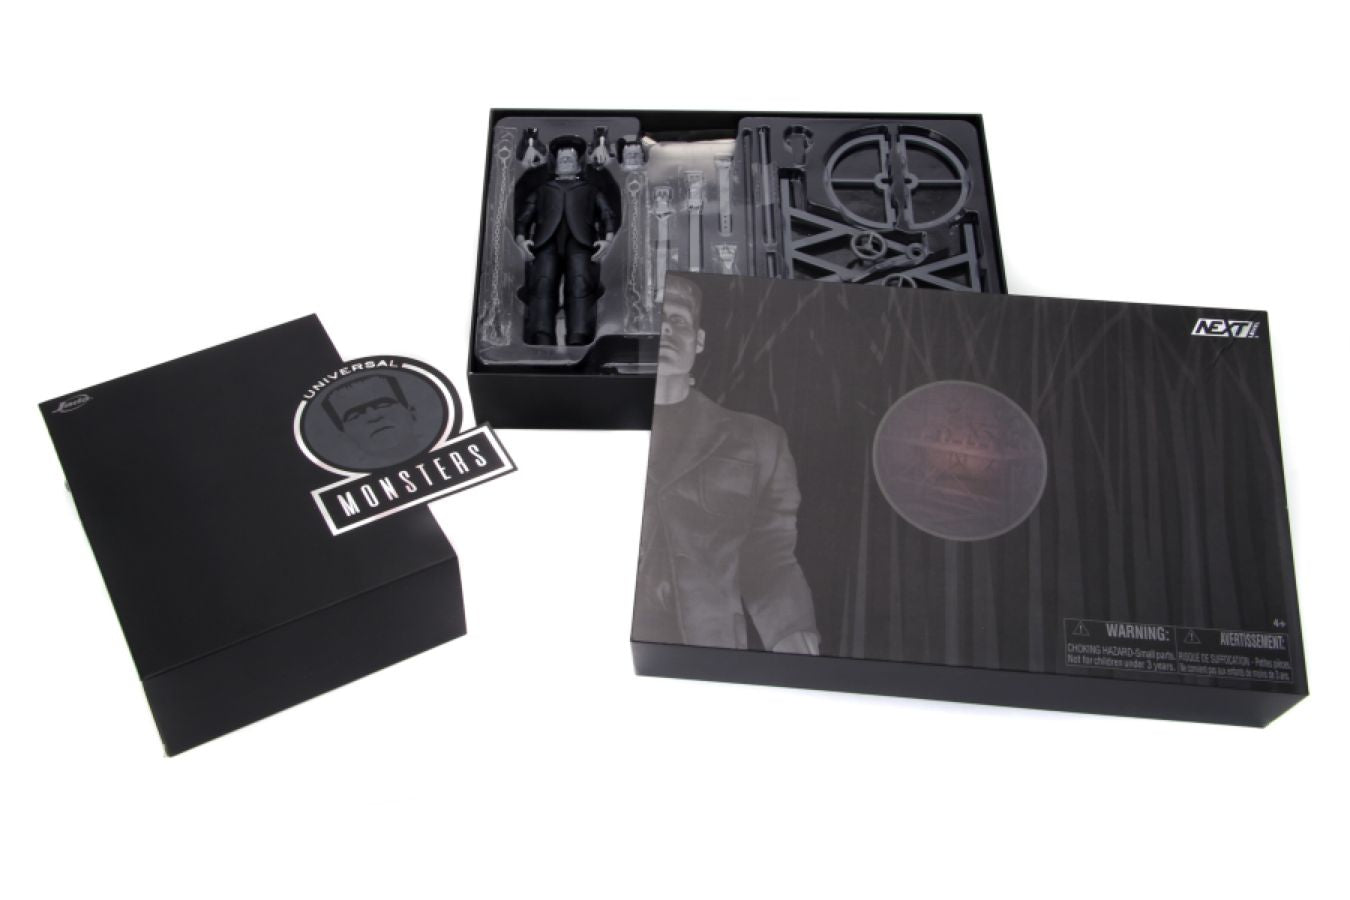 Universal Monsters - Frankenstein Deluxe Box Set